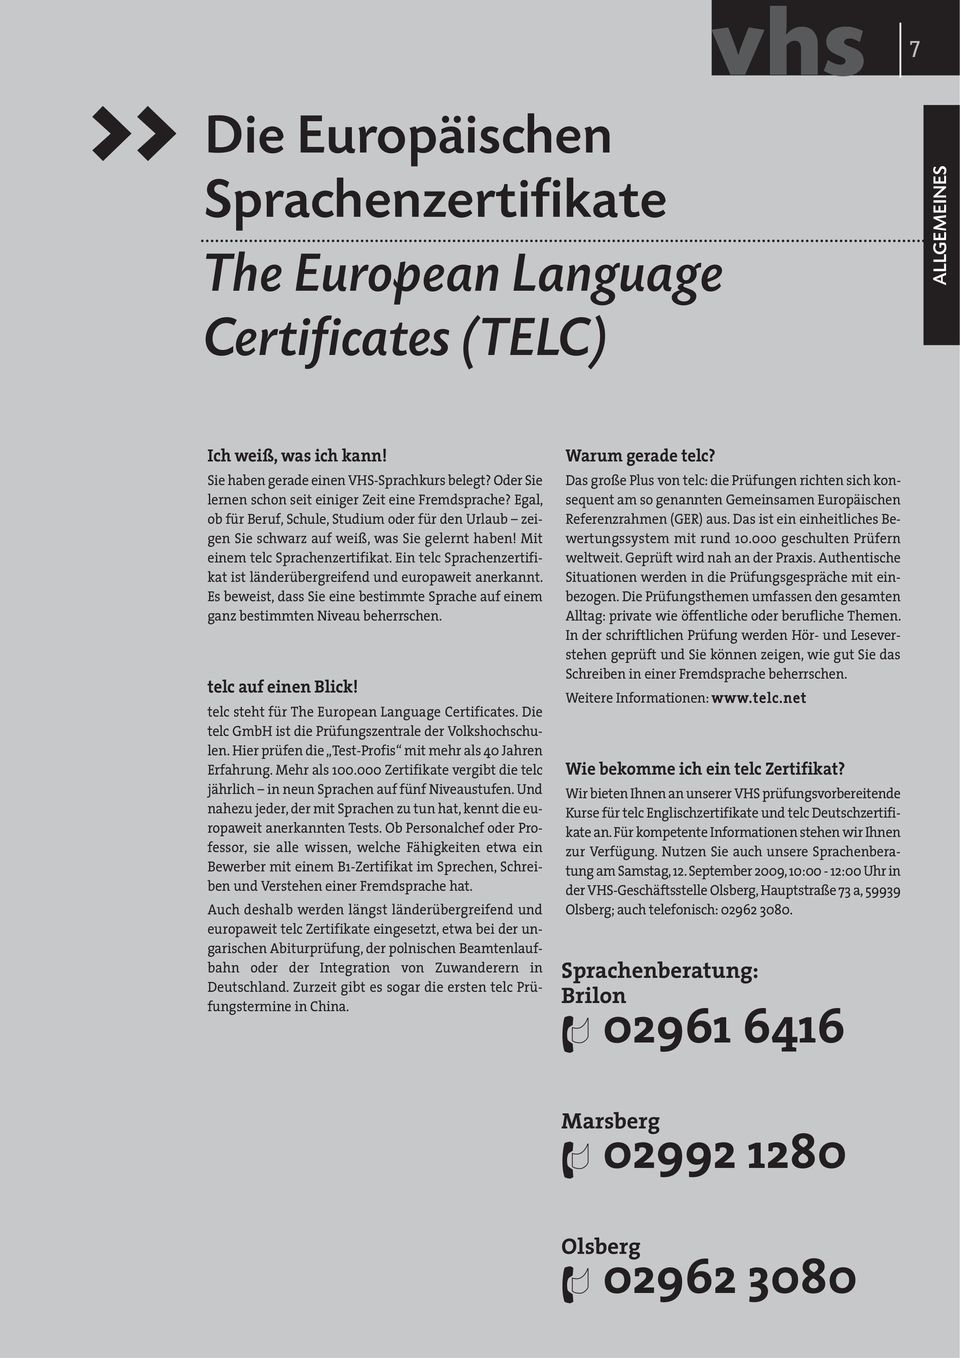 Mit einem telc Sprachenzertifikat. Ein telc Sprachenzertifikat ist länderübergreifend und europaweit anerkannt.